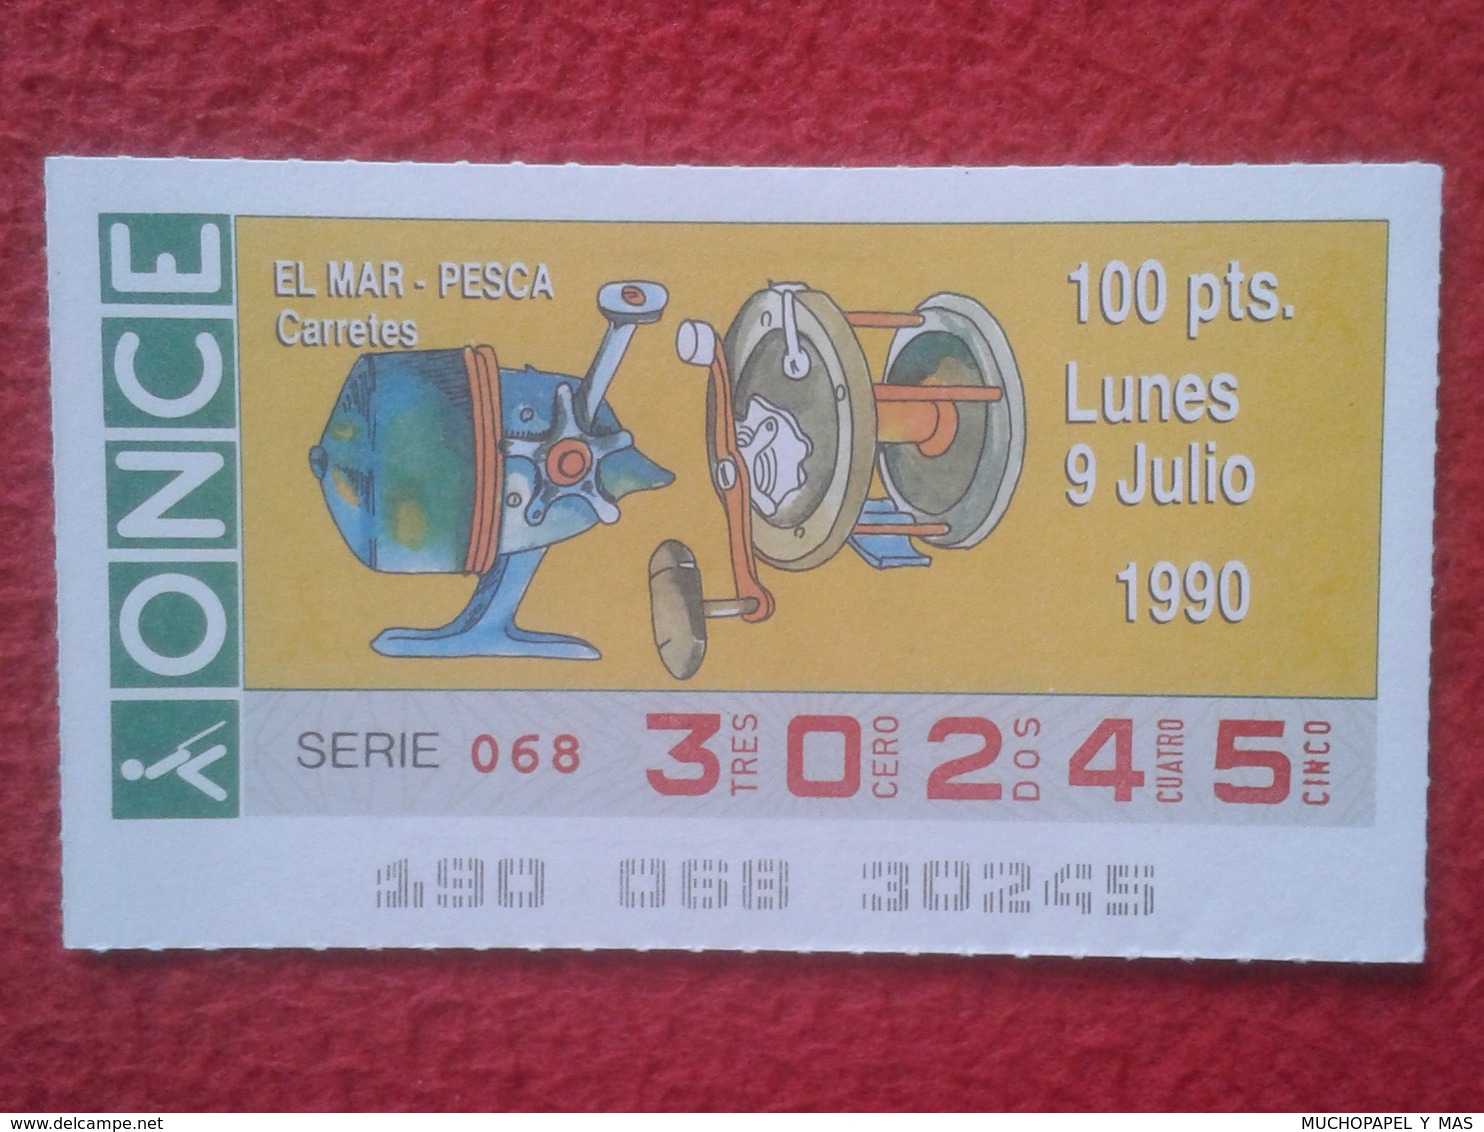 CUPÓN DE ONCE LOTTERY SPAIN LOTERÍA ESPAÑA EL MAR THE SEA LA MER 1990 DEPORTE SPORT CARRETES DE PESCA FISHING REEL REELS - Billetes De Lotería